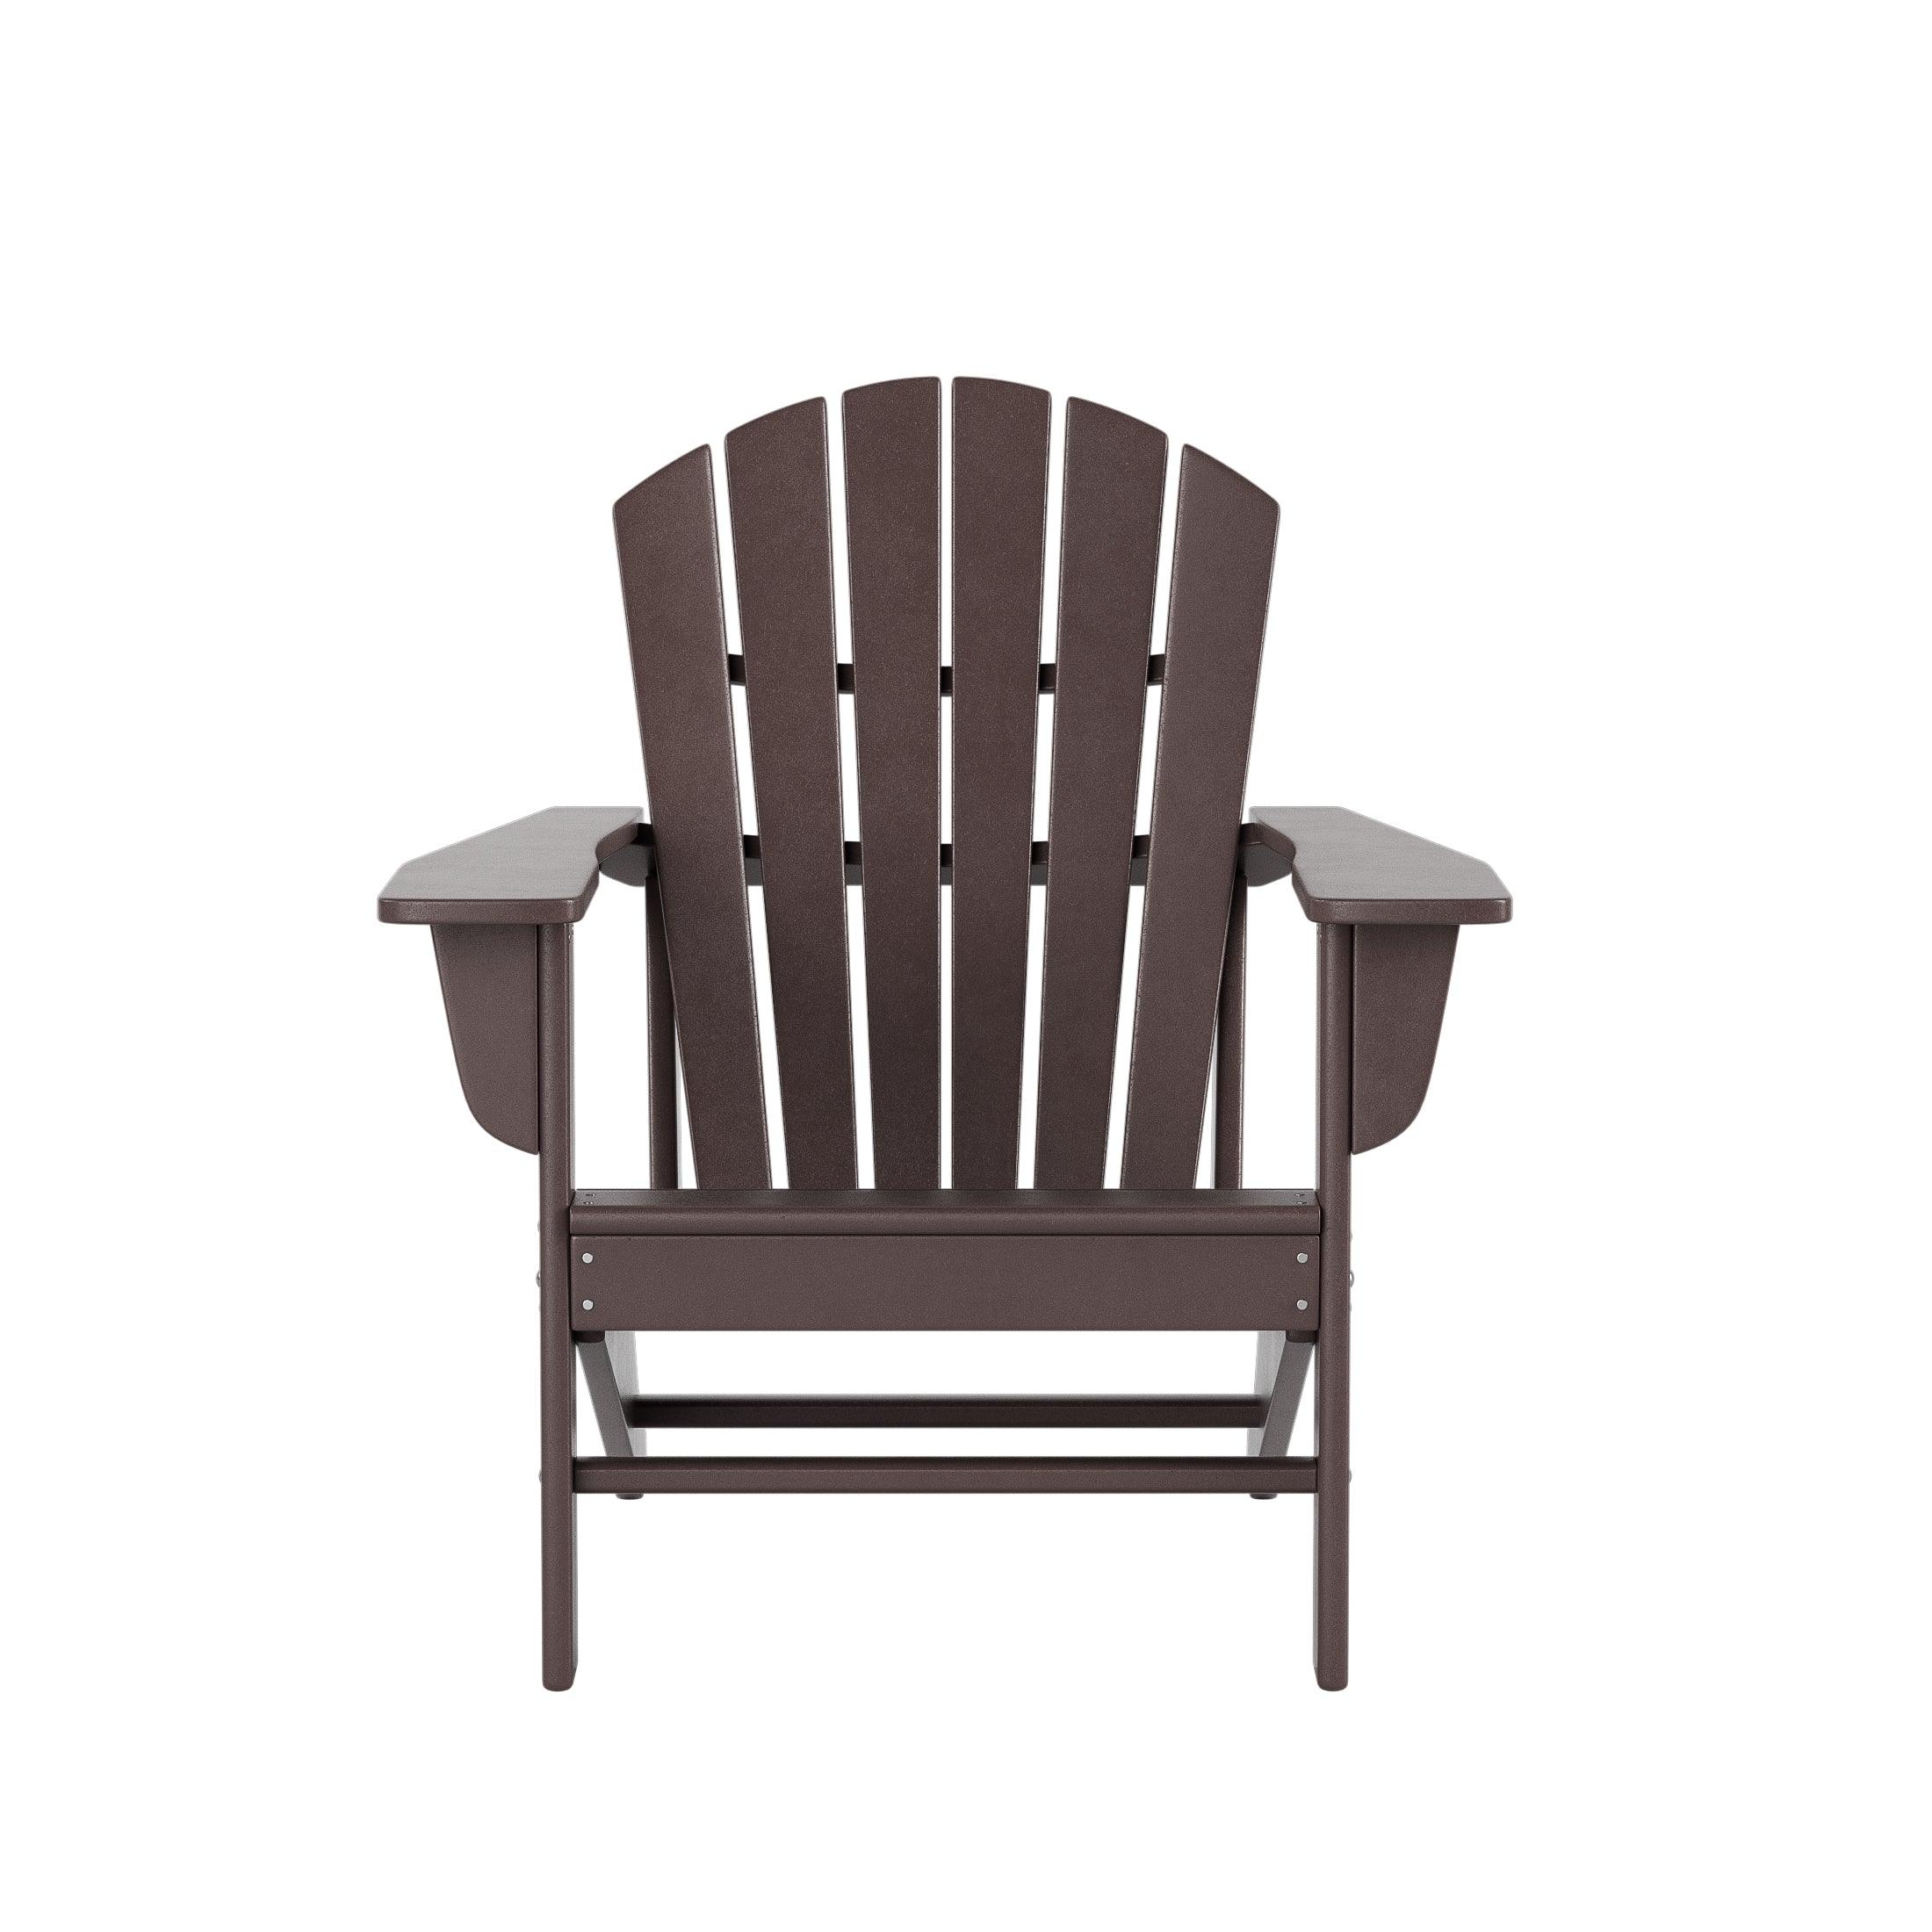 Costaelm Outdoor Adirondack Chair With Ottoman 2-Piece Set, Dark Brown